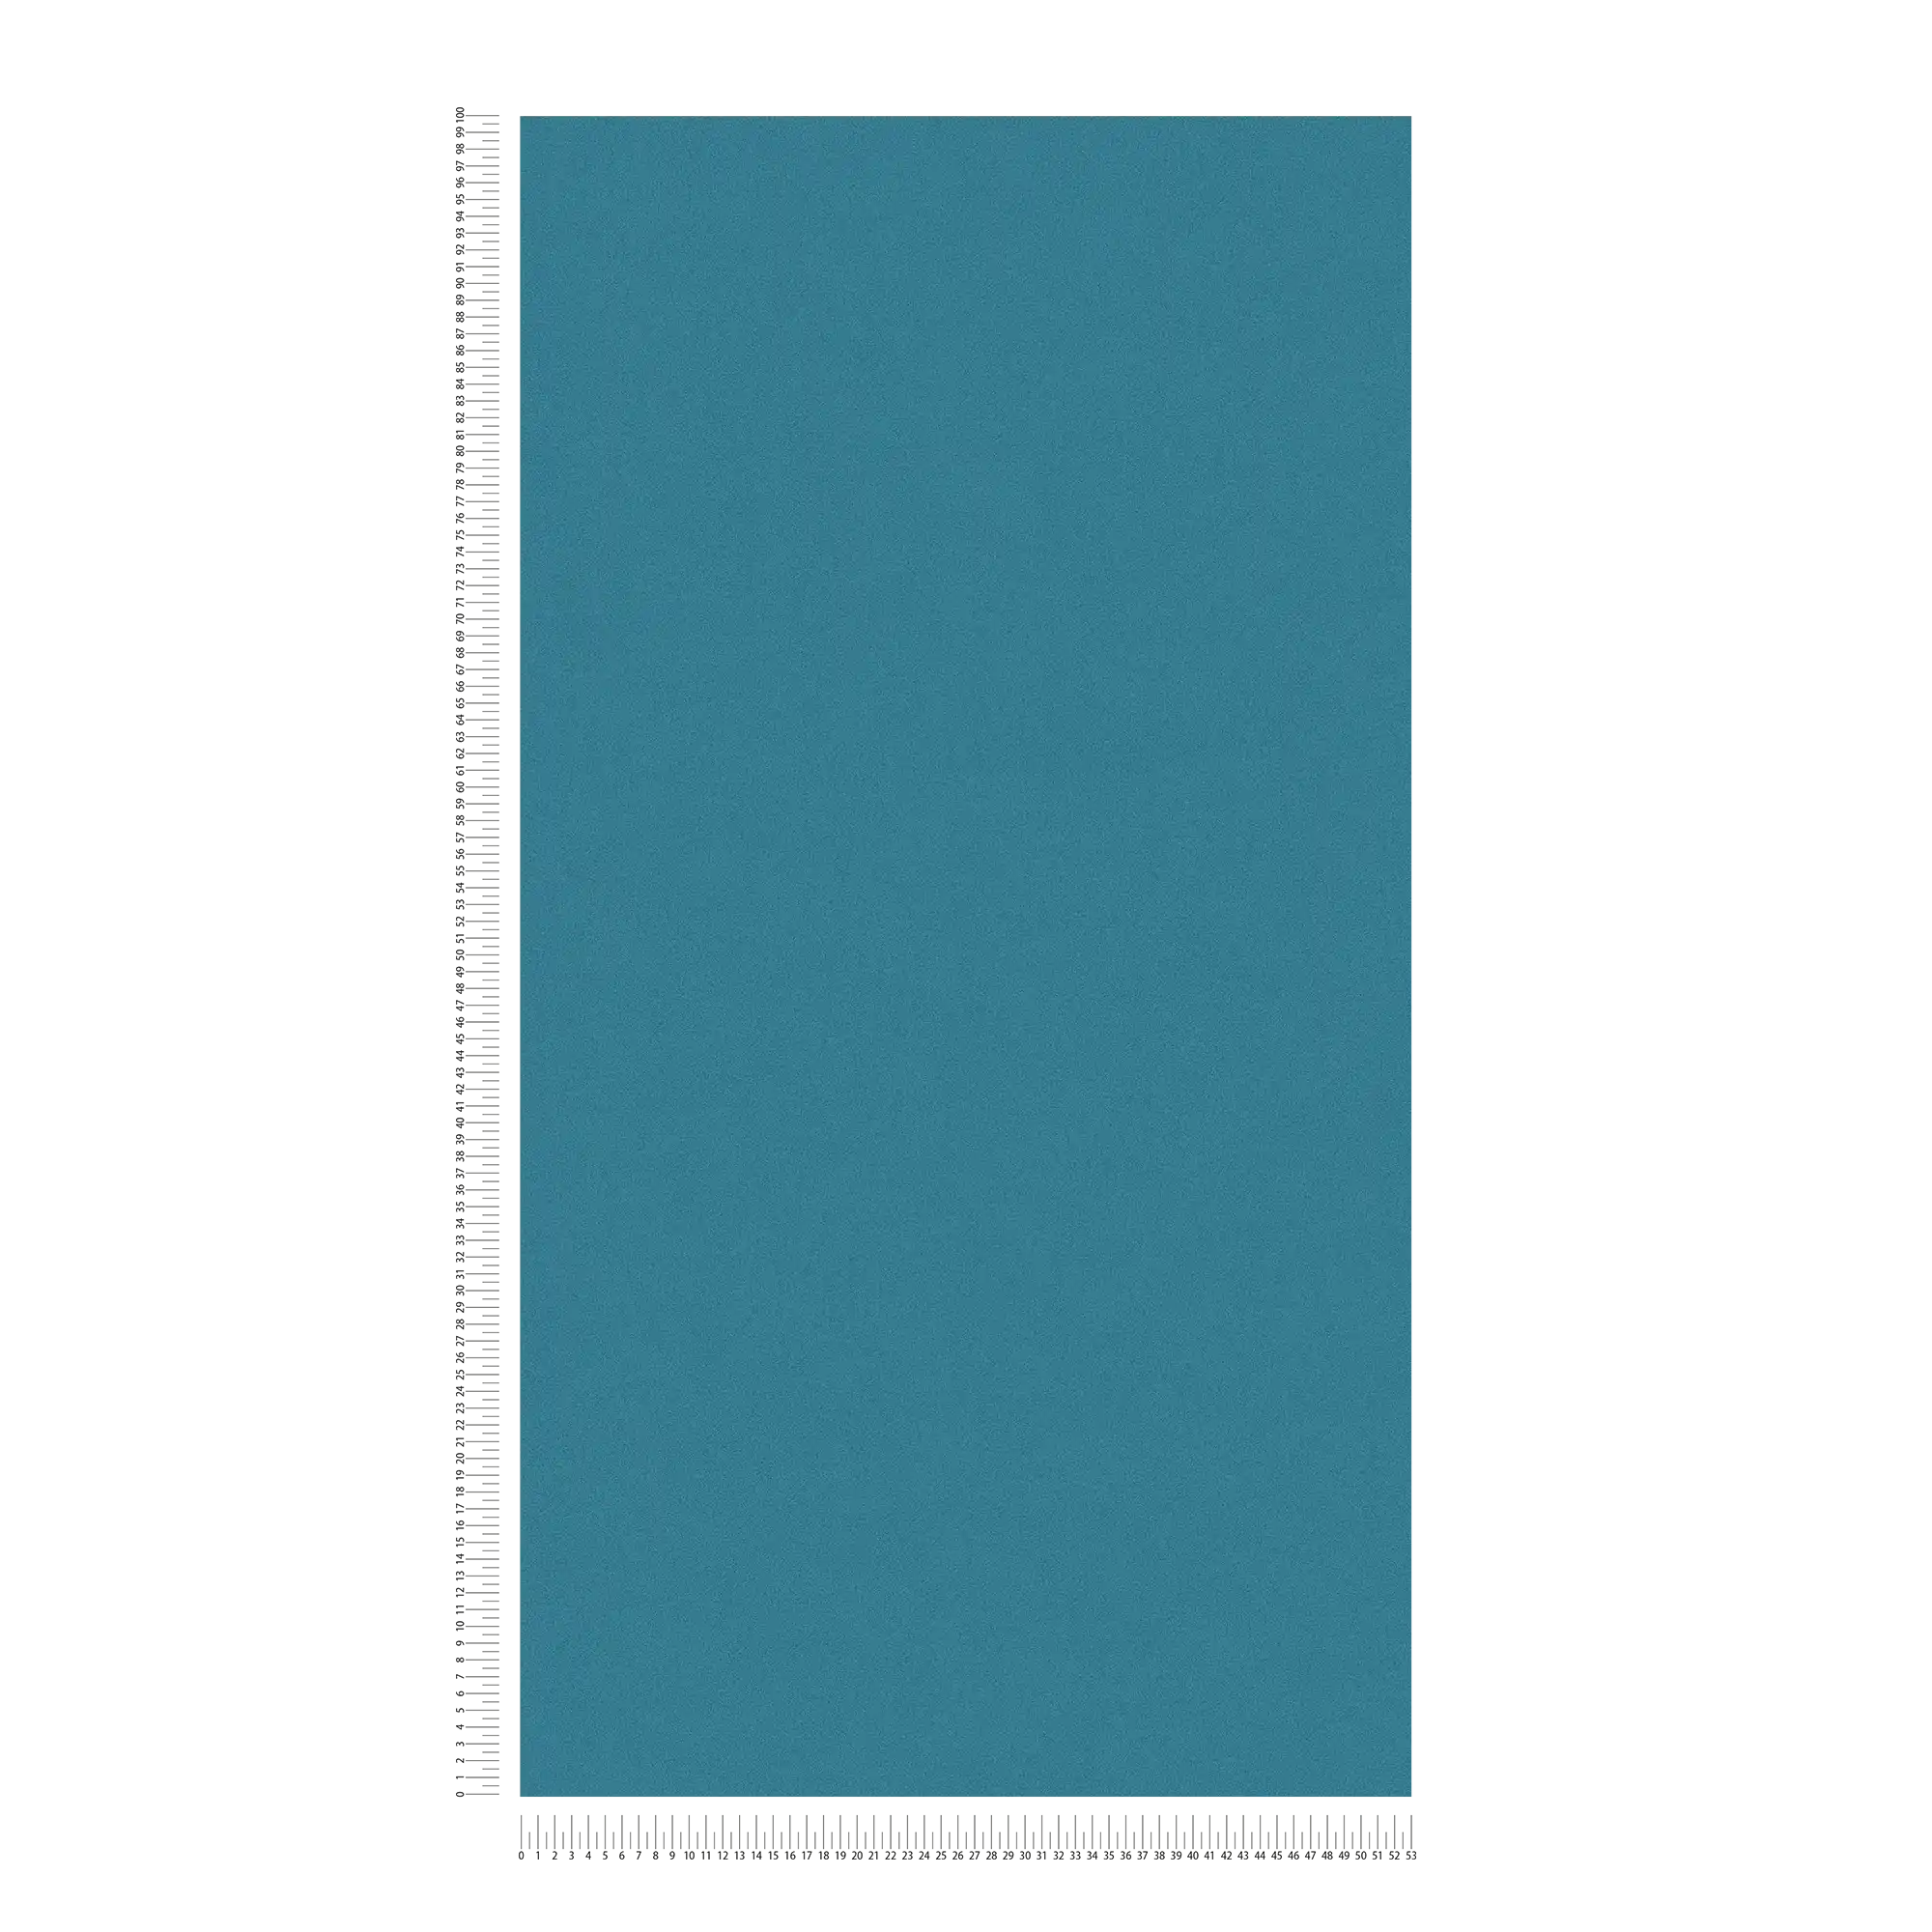             behang donkerblauw turquoise, zijdemat glans & textuur patroon
        